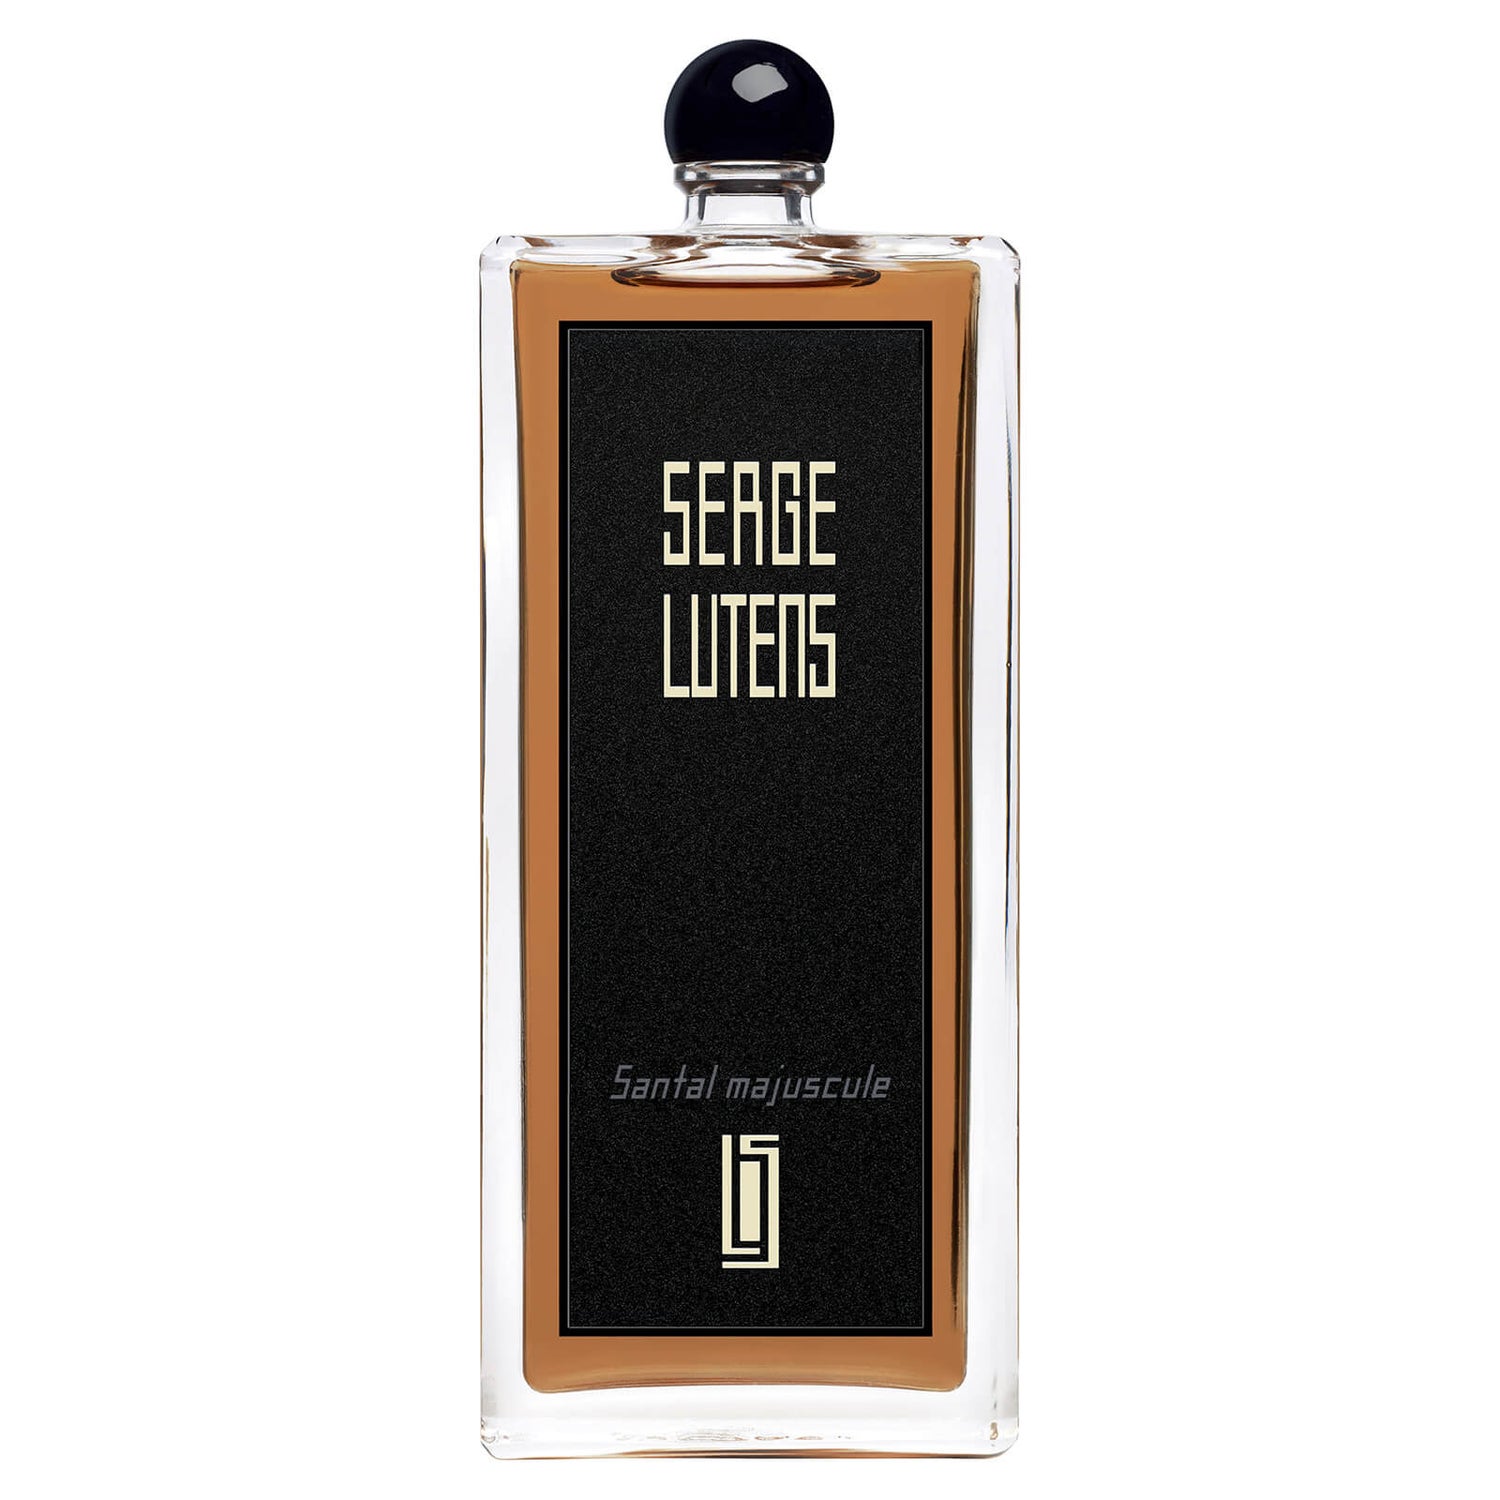 Serge Lutens Santal Majuscule Eau de Parfum (Various Sizes)